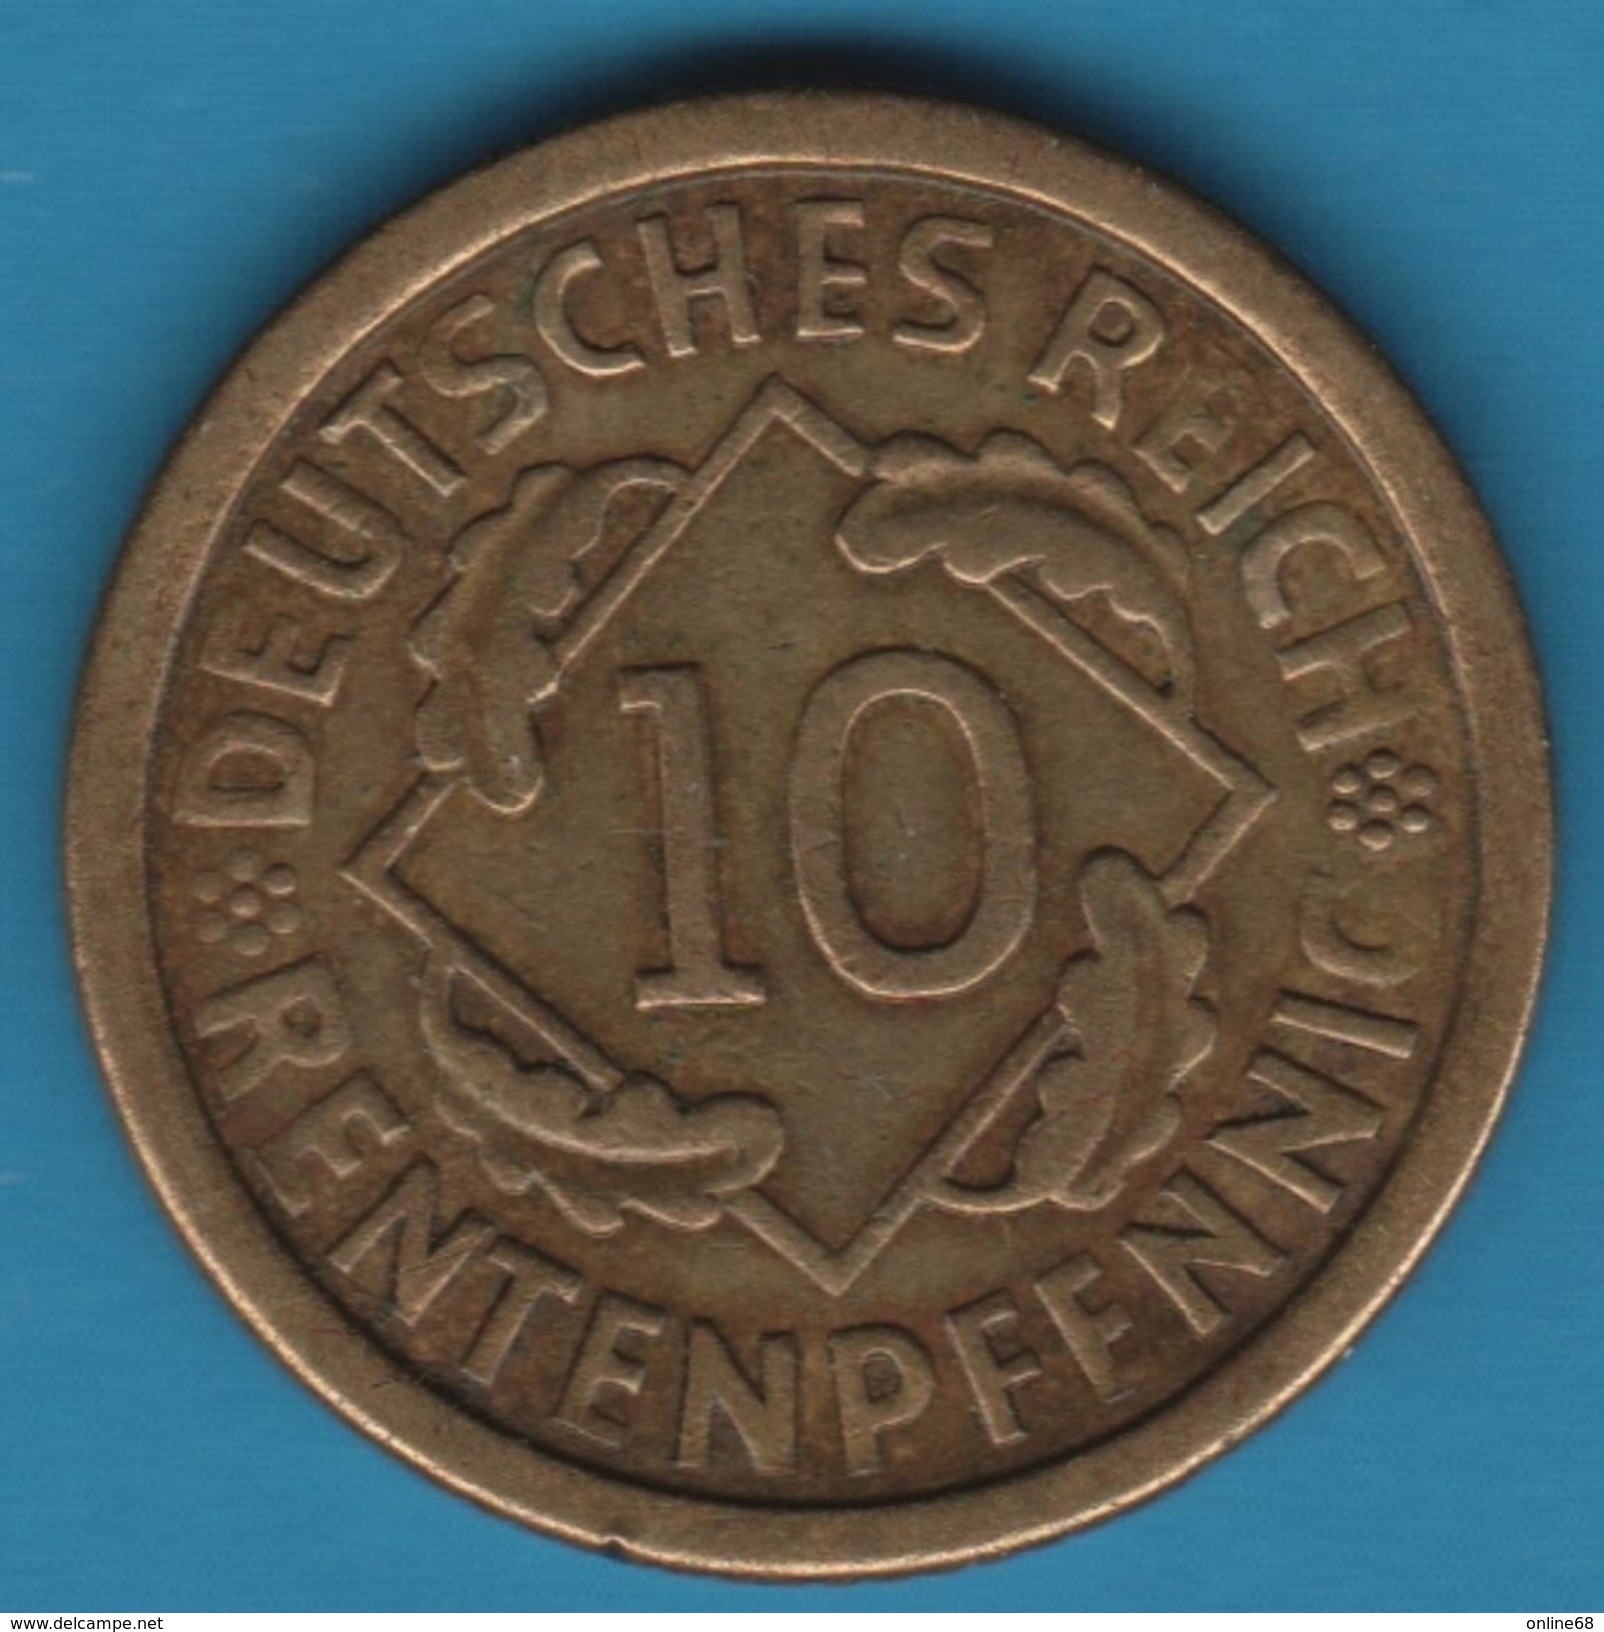 DEUTSCHES REICH 10 RENTENPFENNIG 1924 A - 10 Rentenpfennig & 10 Reichspfennig